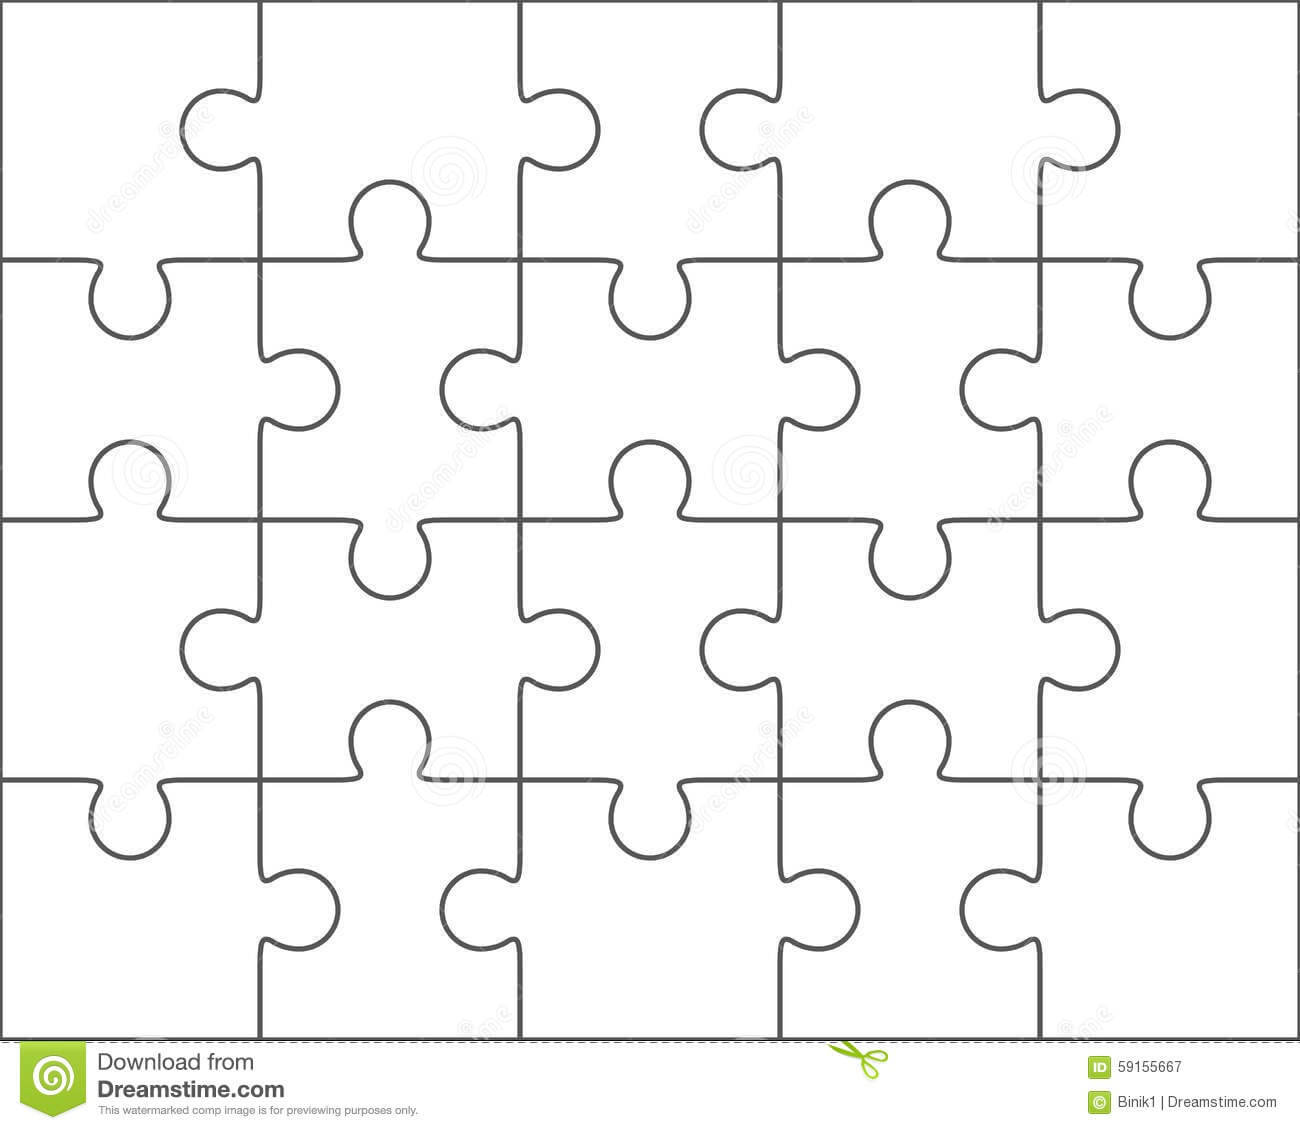 010 Jig Saw Puzzle Template Jigsaw Blank Twenty Pieces With Regard To Blank Jigsaw Piece Template